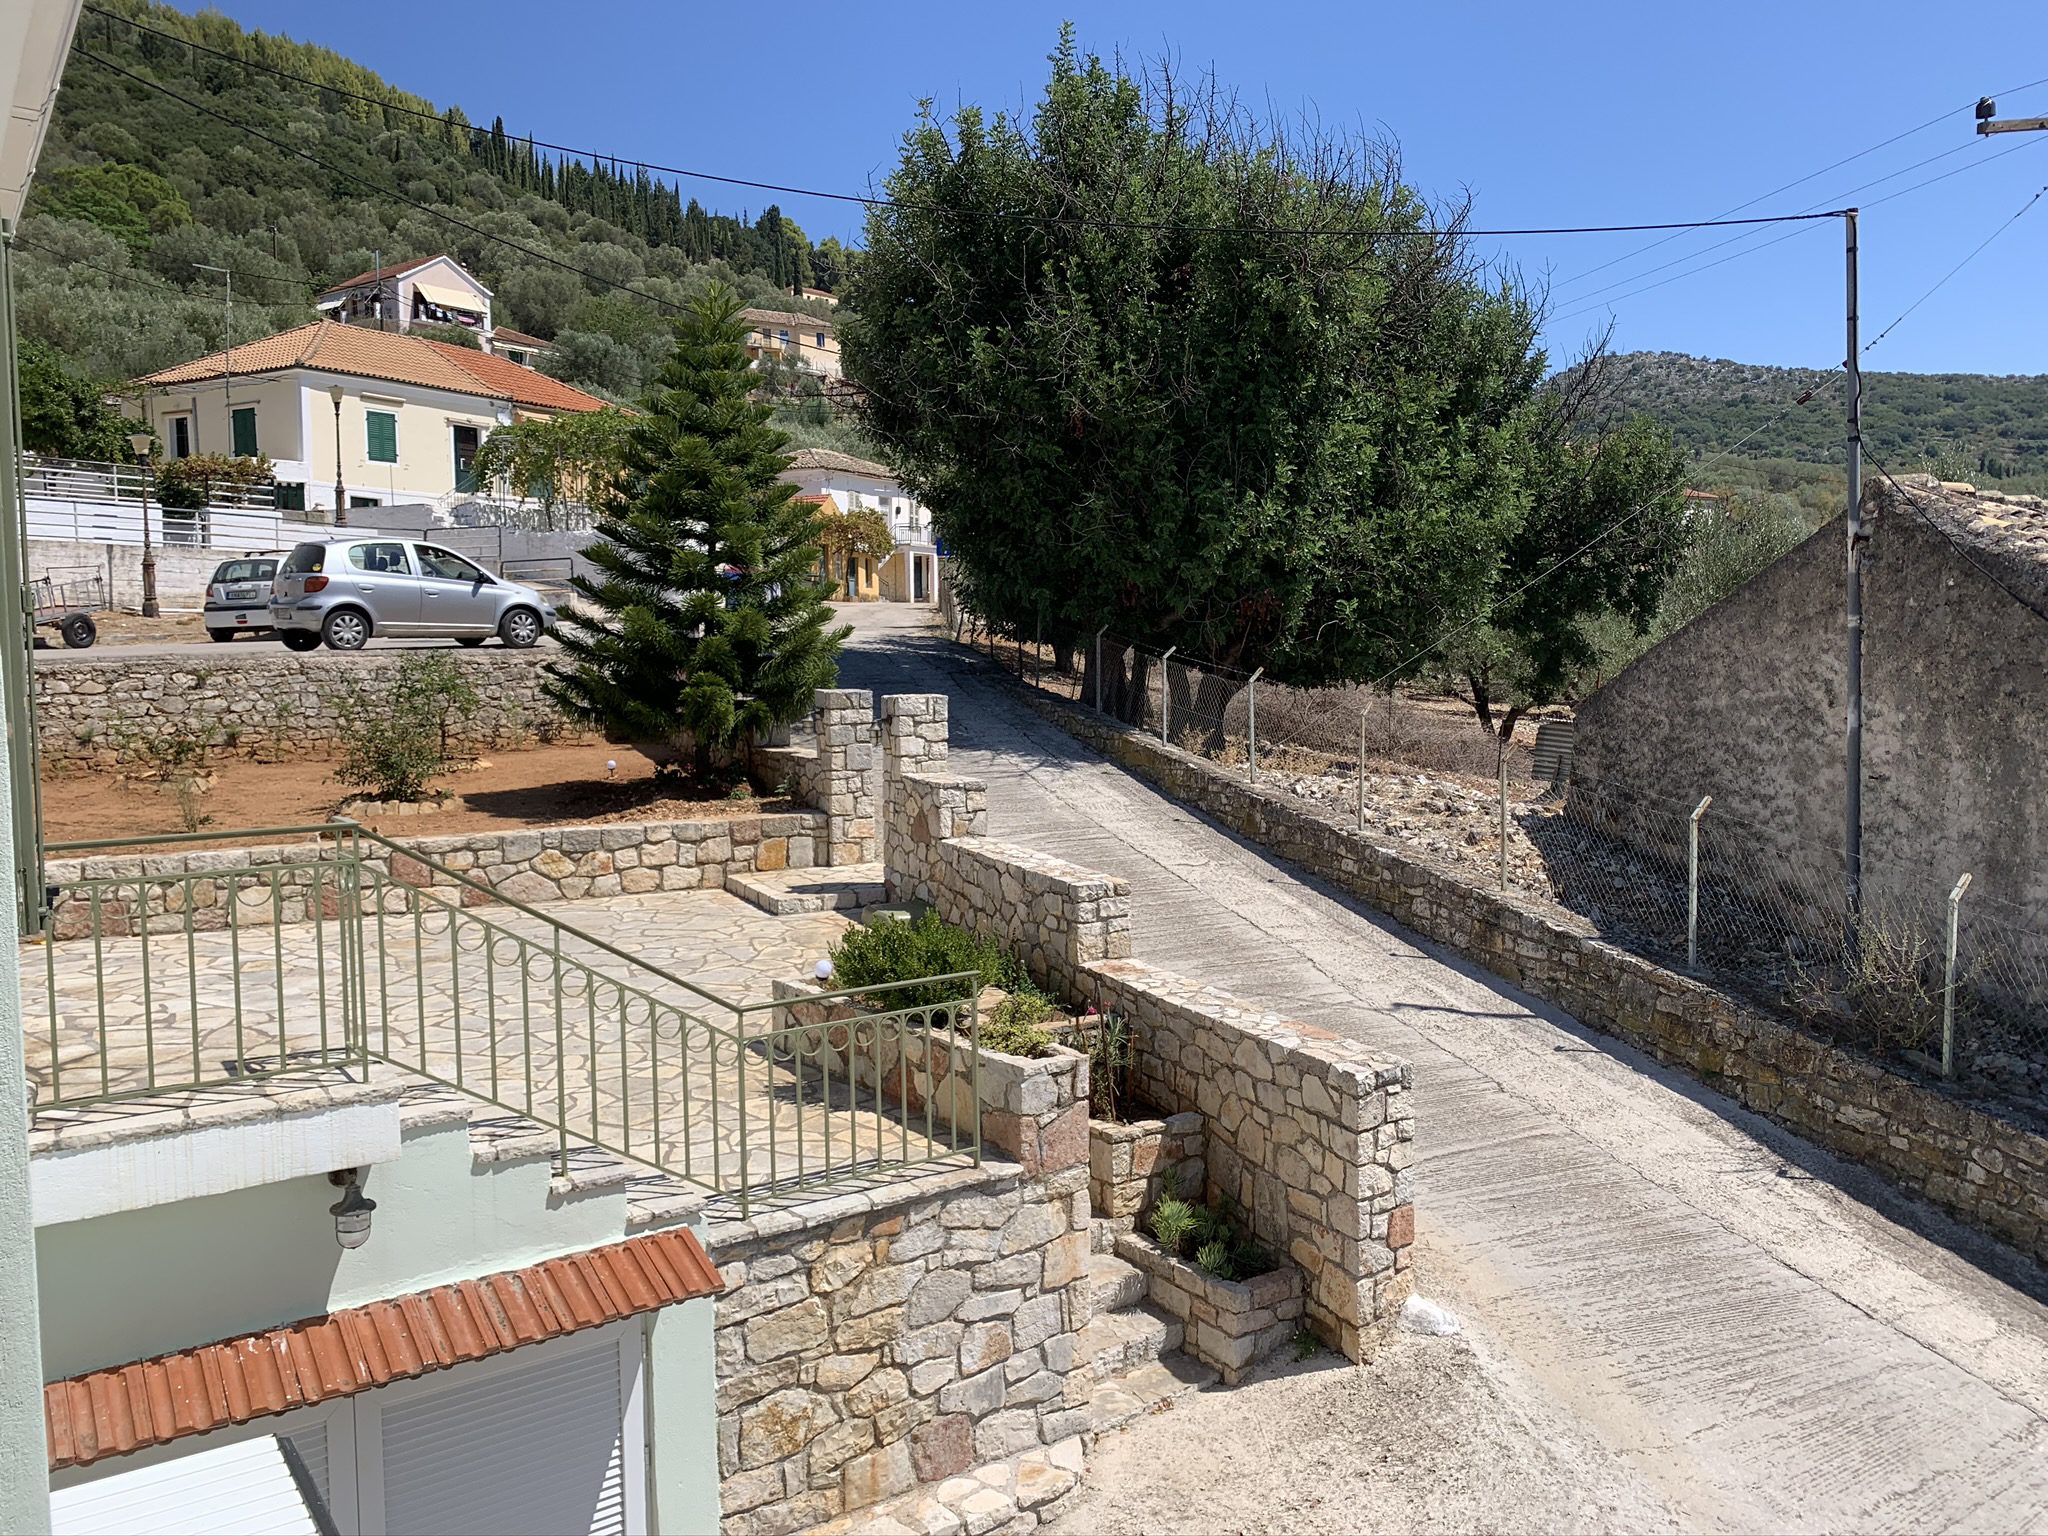 Εξωτερική πέτρινη βεράντα του σπιτιού προς πώληση στην Ιθάκη Ελλάδα, Βαθύ